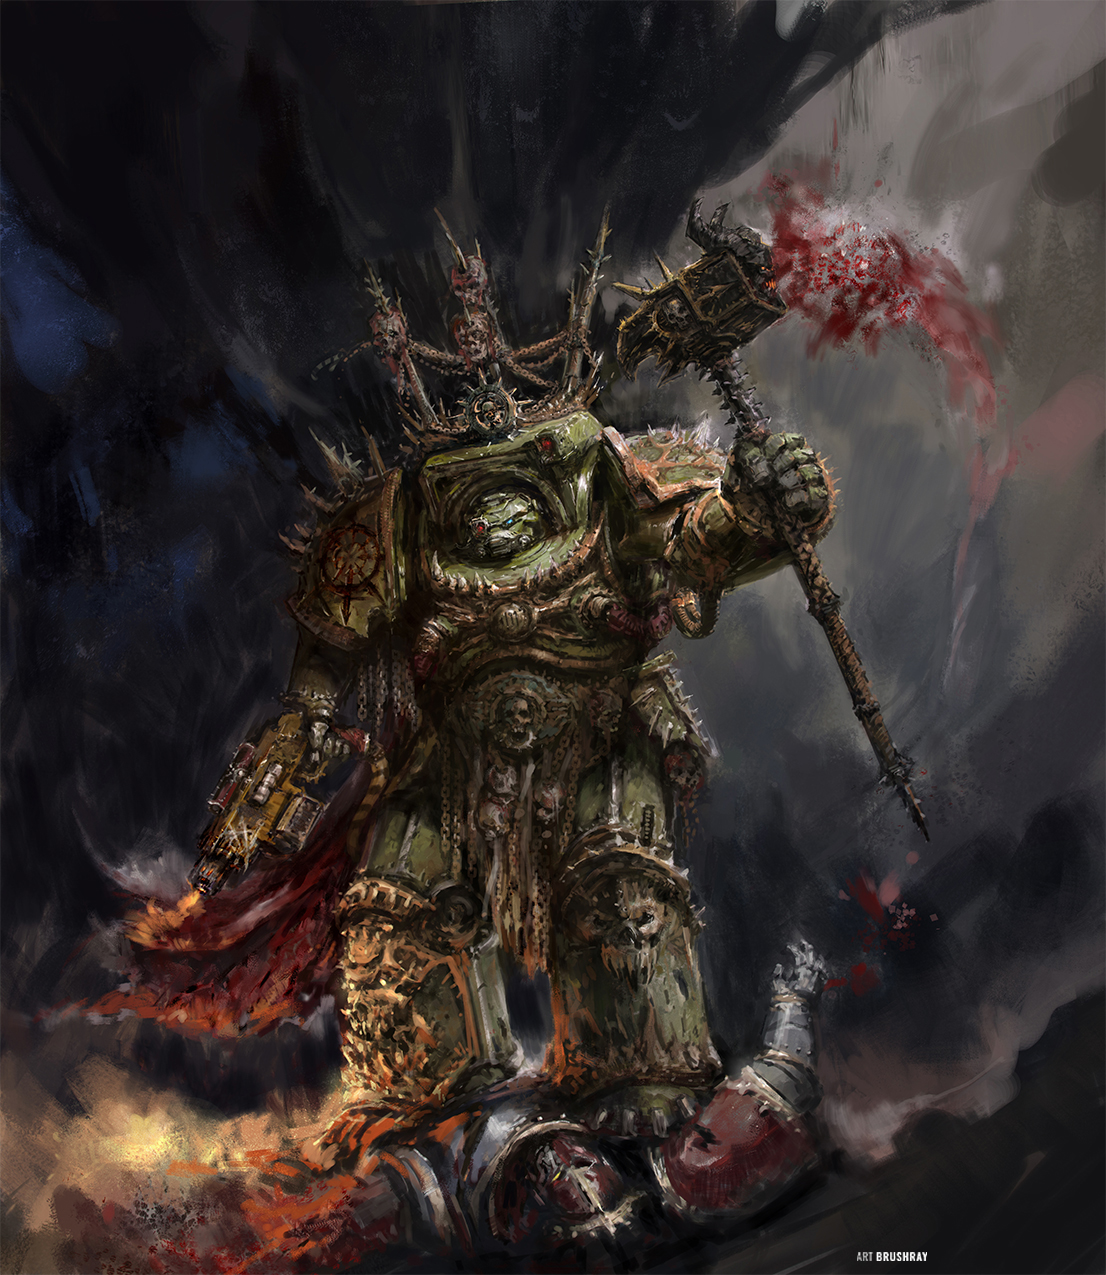 Lord Krios the Siegebreaker, fan art by Dmitry Brushray